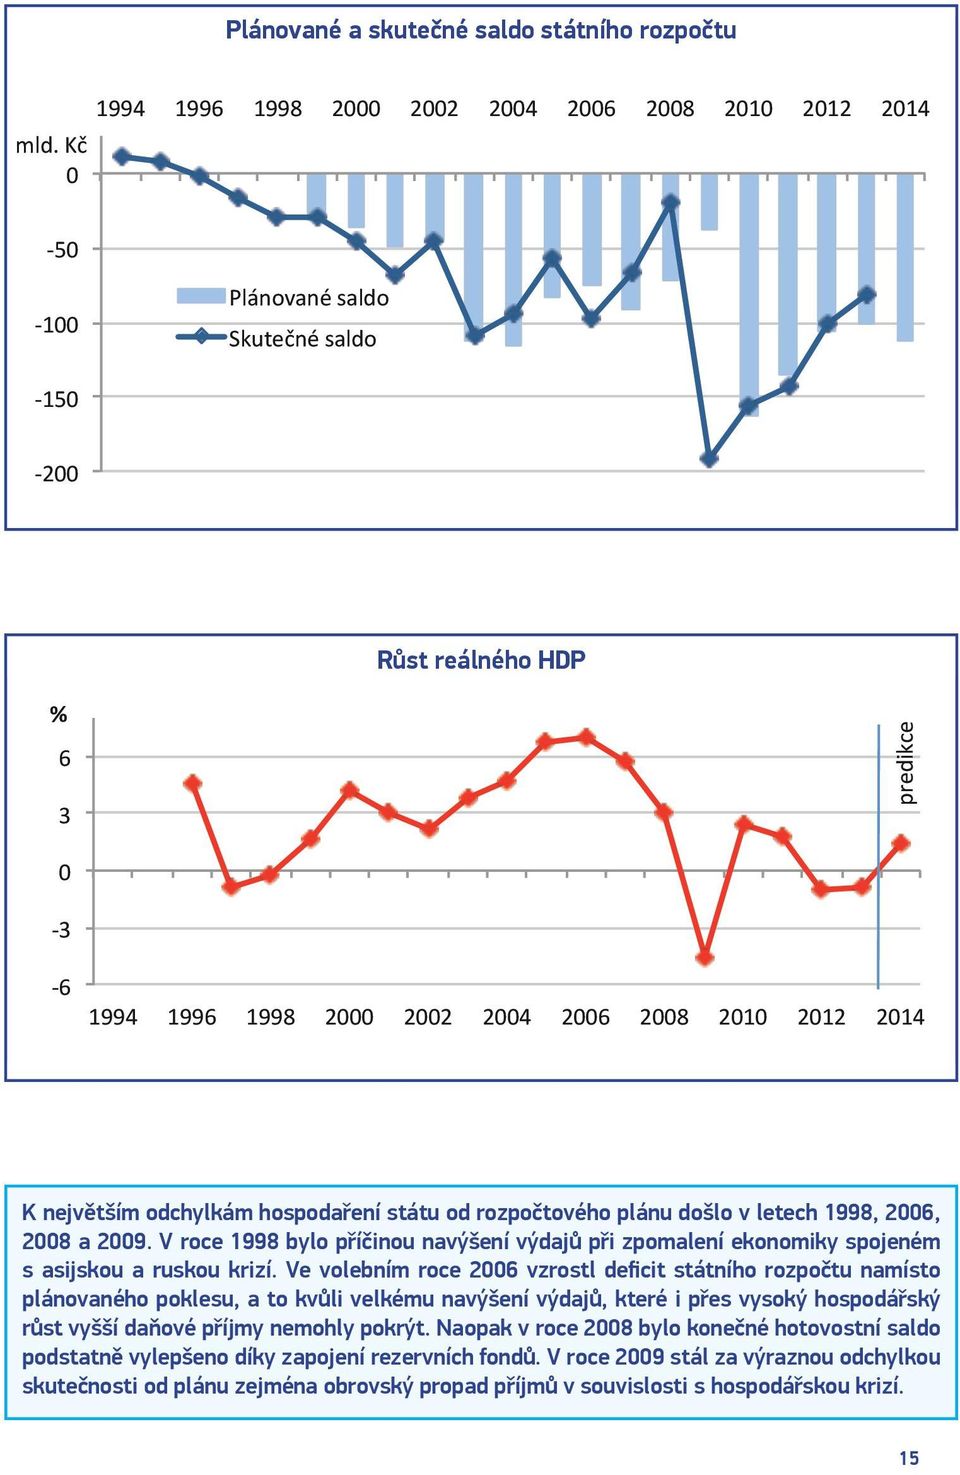 hospodaření státu od rozpočtového plánu došlo v letech 1998, 2006, 2008 a 2009. V roce 1998 bylo příčinou navýšení výdajů při zpomalení ekonomiky spojeném s asijskou a ruskou krizí.